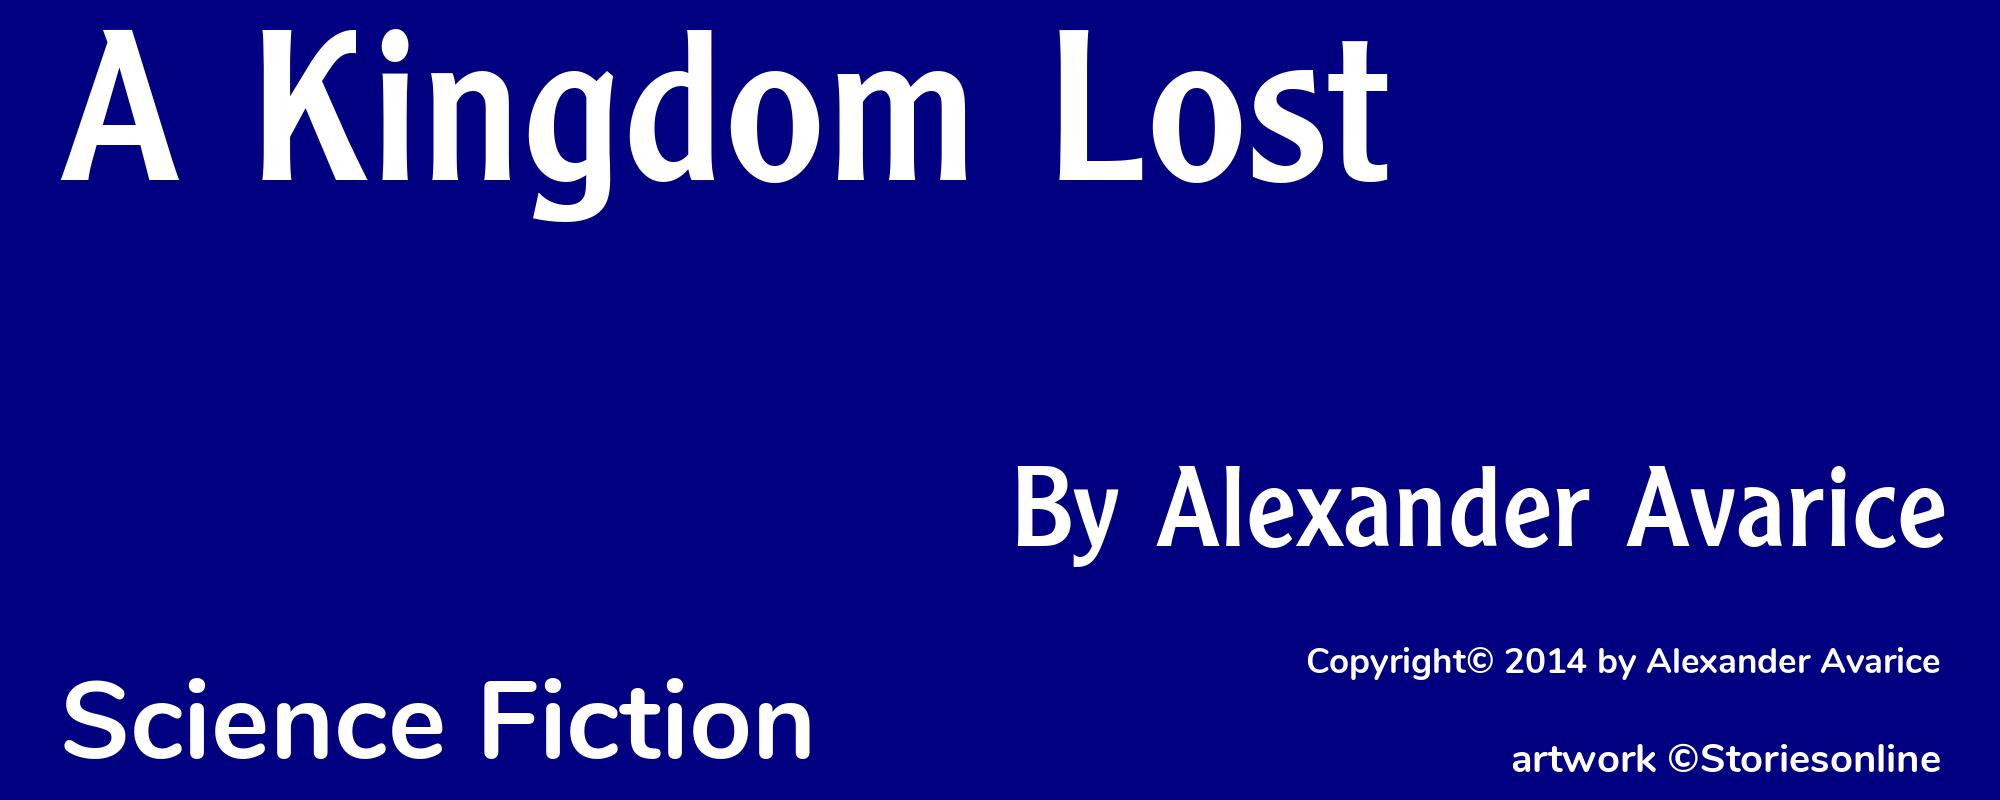 A Kingdom Lost - Cover